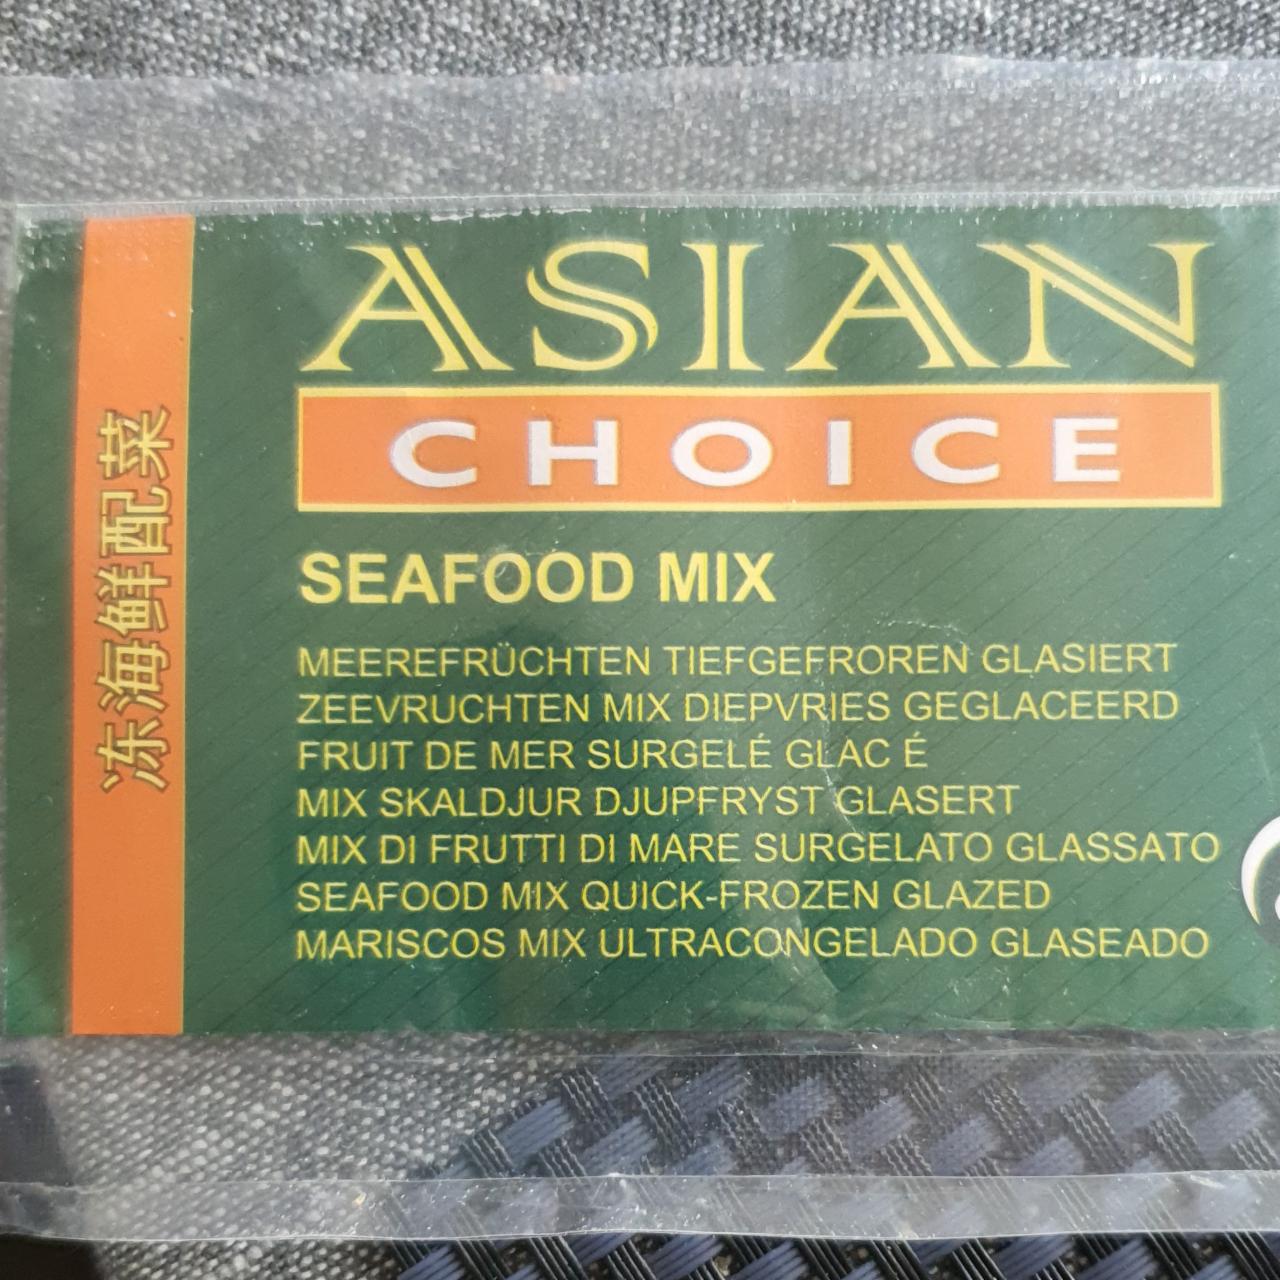 Fotografie - Seafood mix Asian Choice